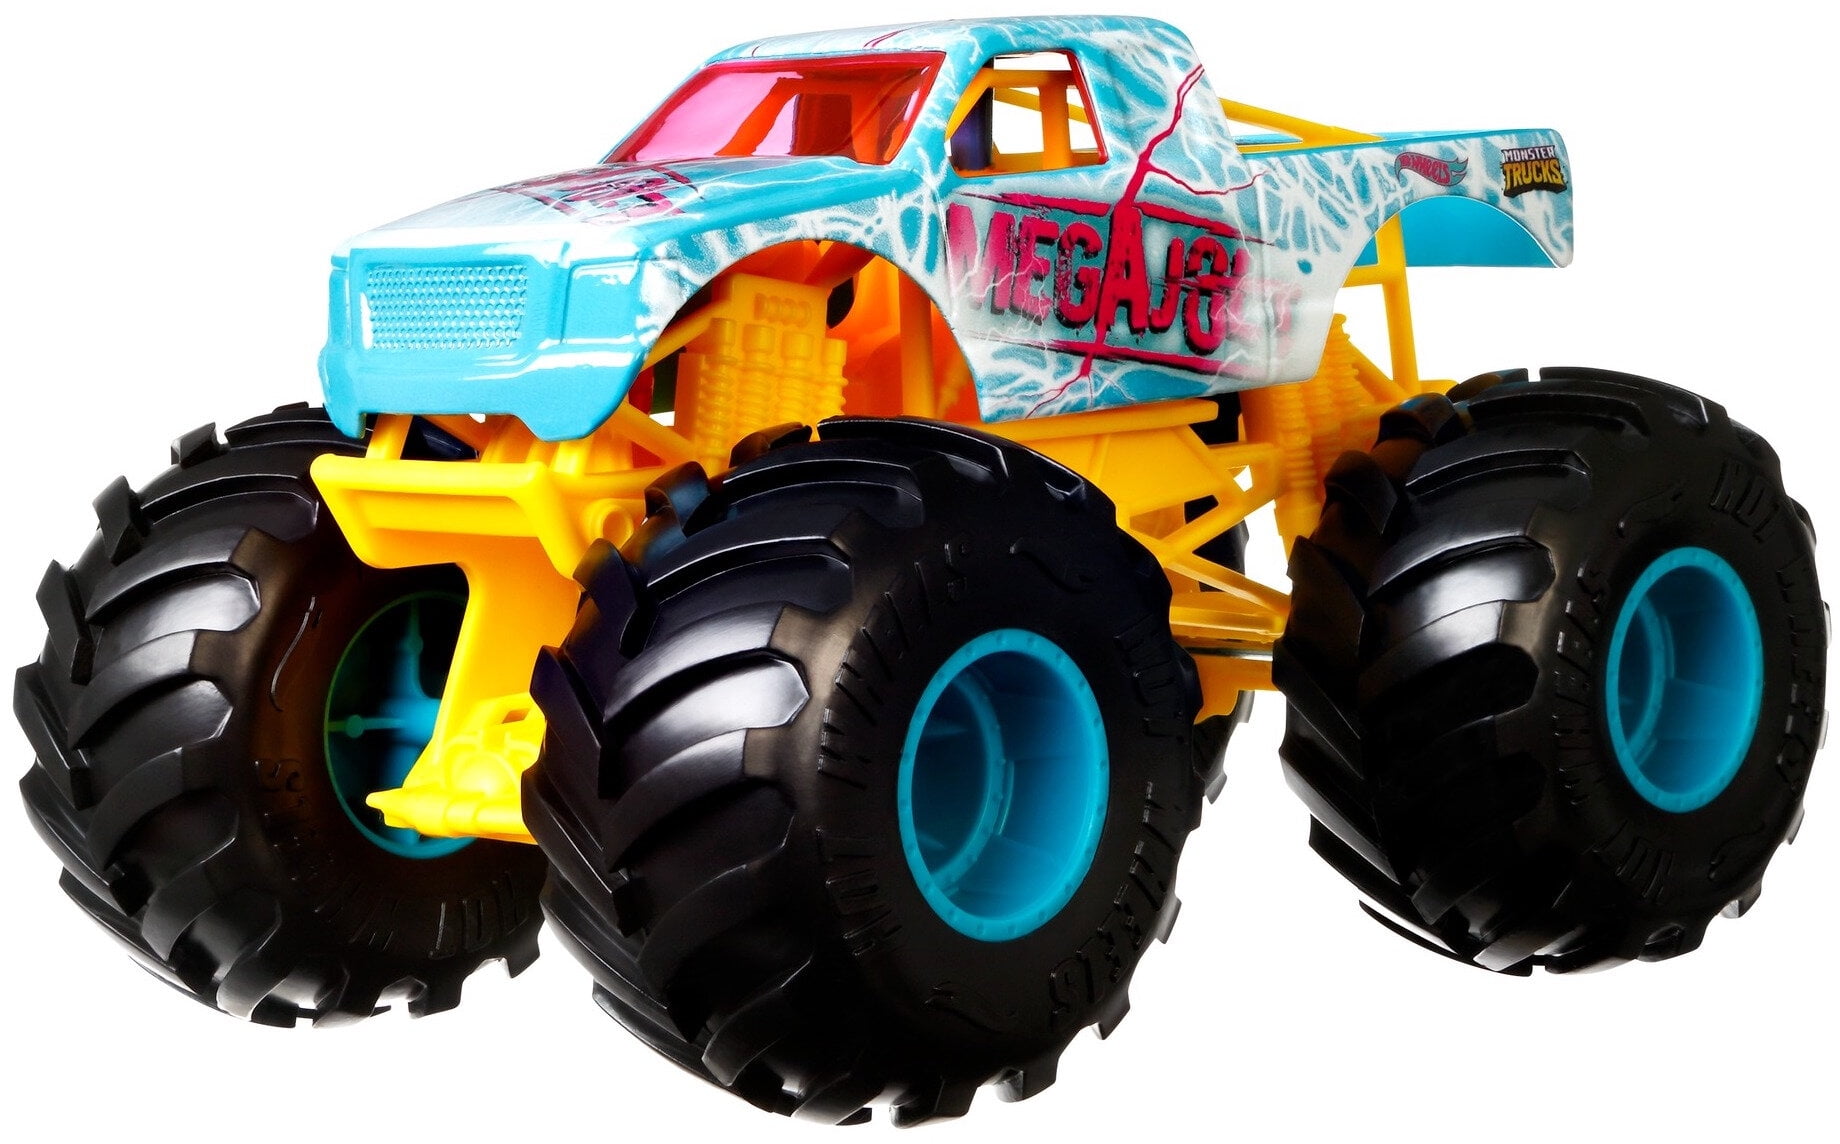  Hot Wheels Monster Trucks, Transporter and Racetrack